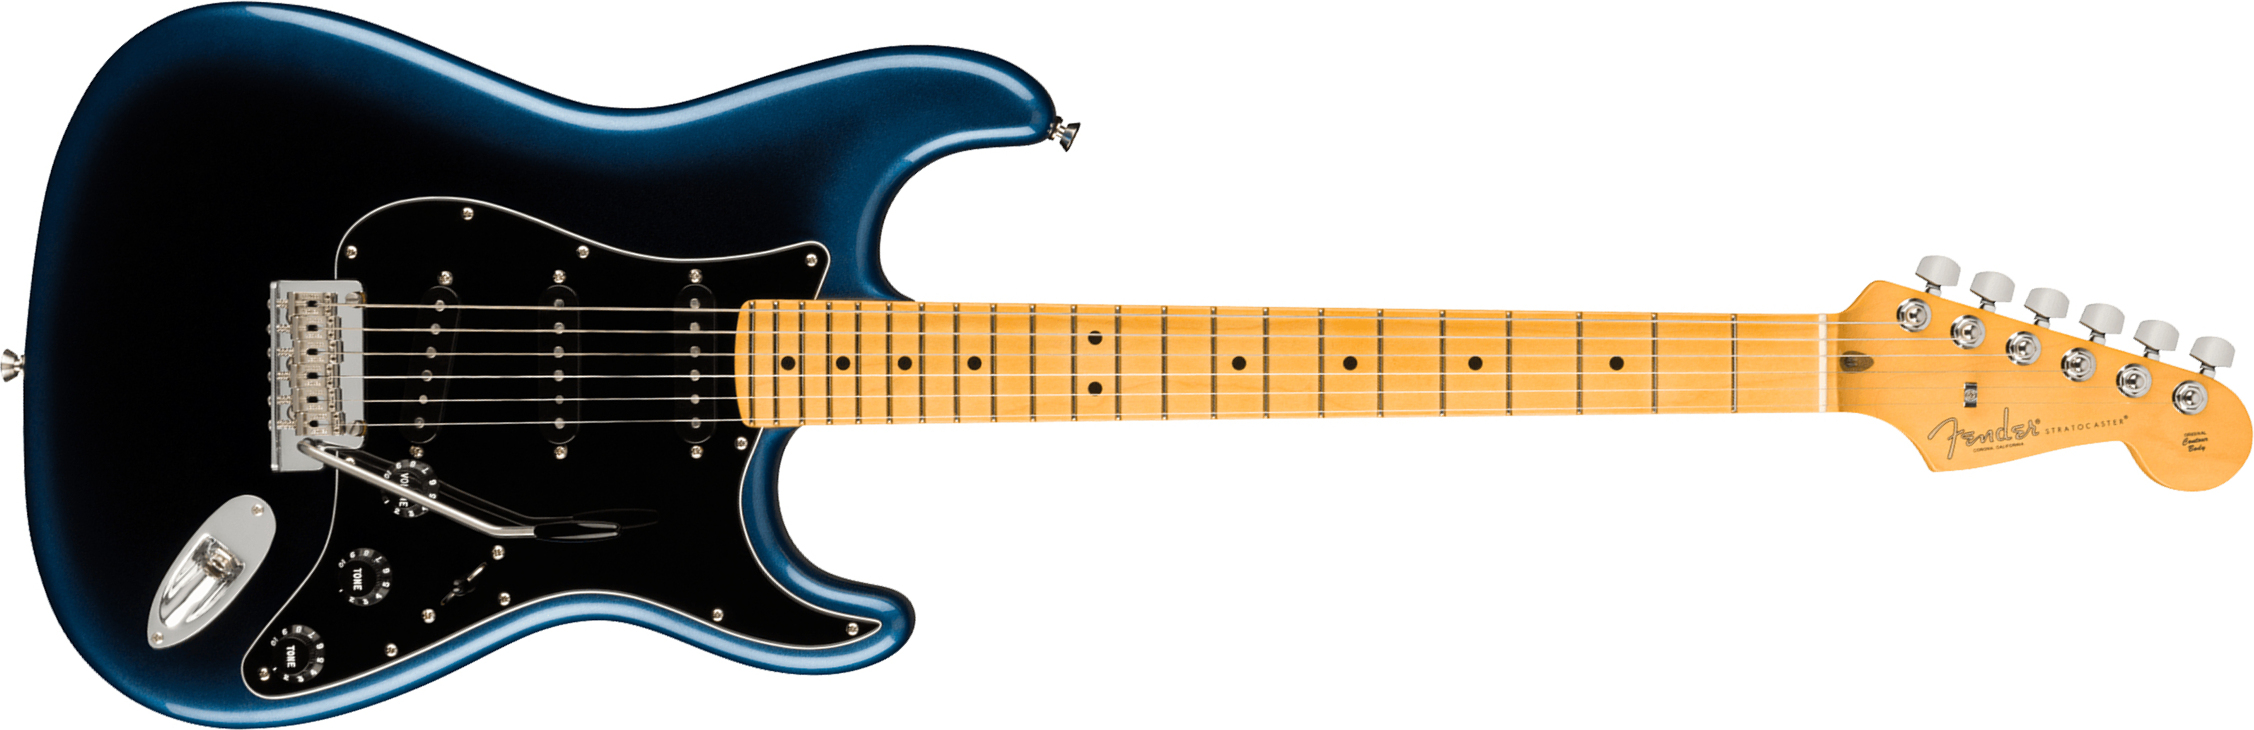 Fender Strat American Professional Ii Usa Mn - Dark Night - Elektrische gitaar in Str-vorm - Main picture